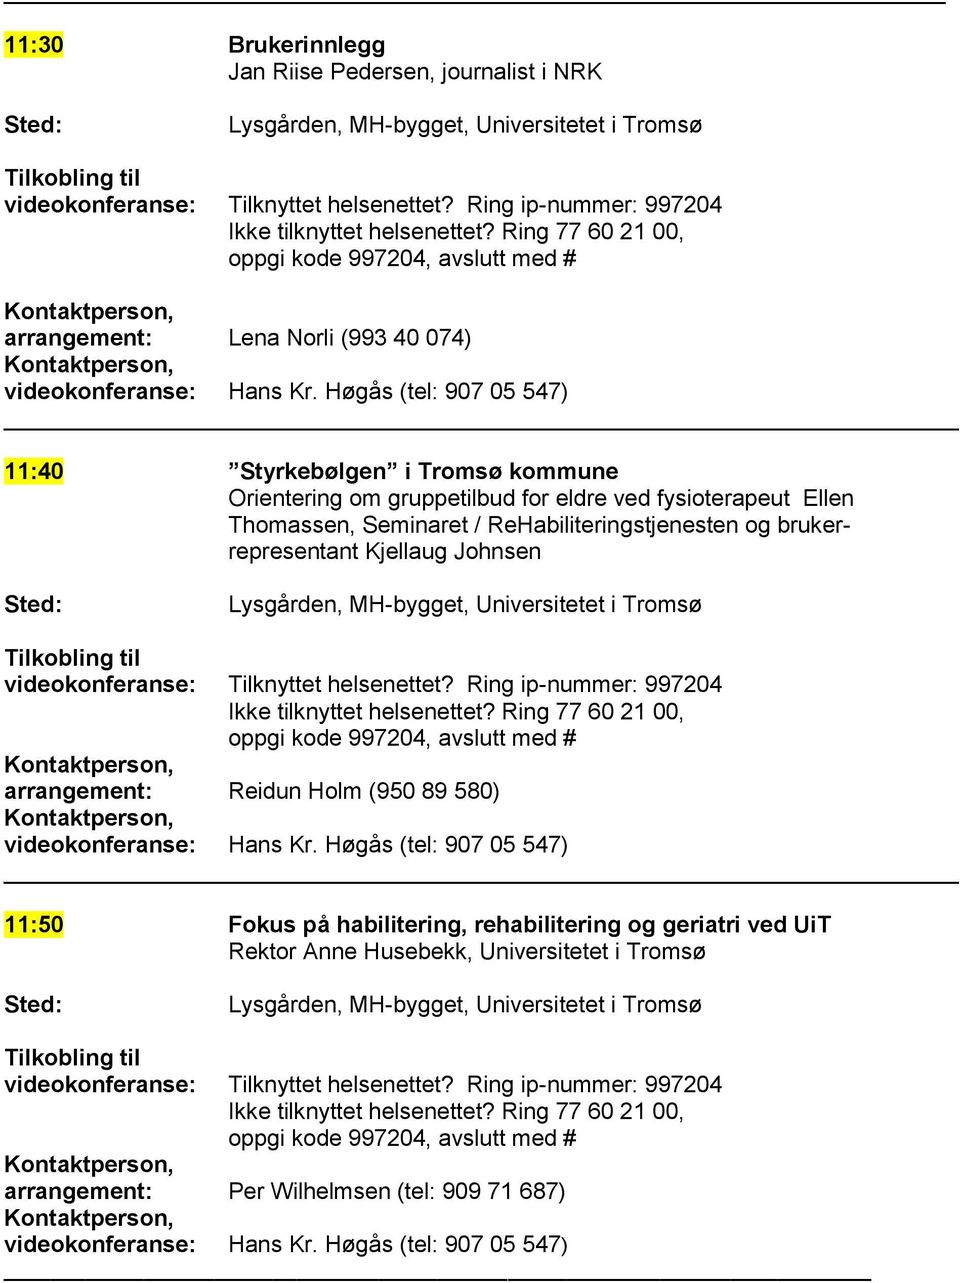 Seminaret / ReHabiliteringstjenesten og brukerrepresentant Kjellaug Johnsen arrangement: Reidun Holm (950